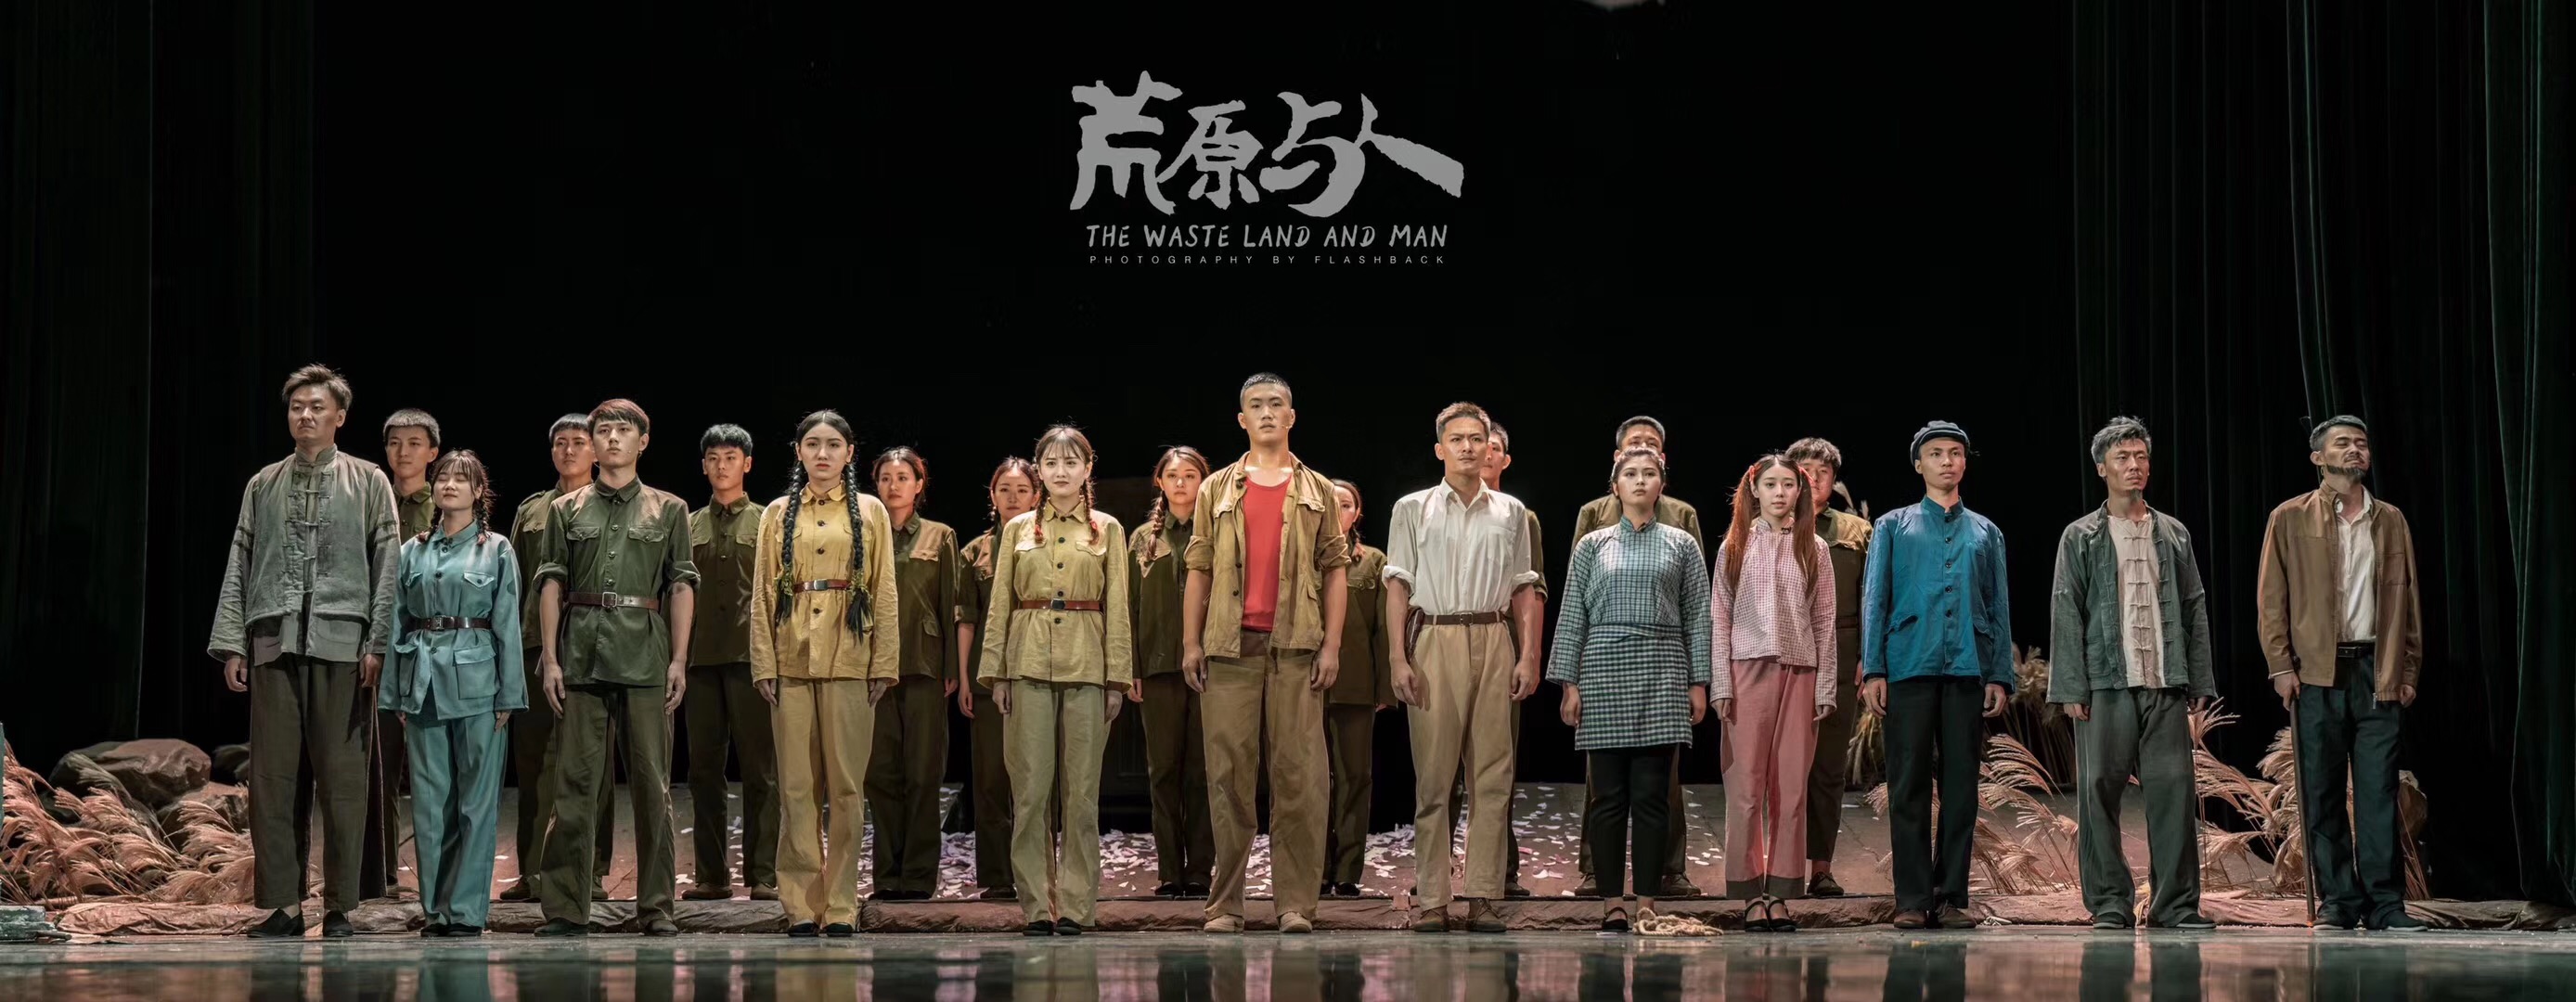 2015级表演毕业大戏《荒原与人》导演:孟繁壮,舞美设计:林燕,于兰.jpg